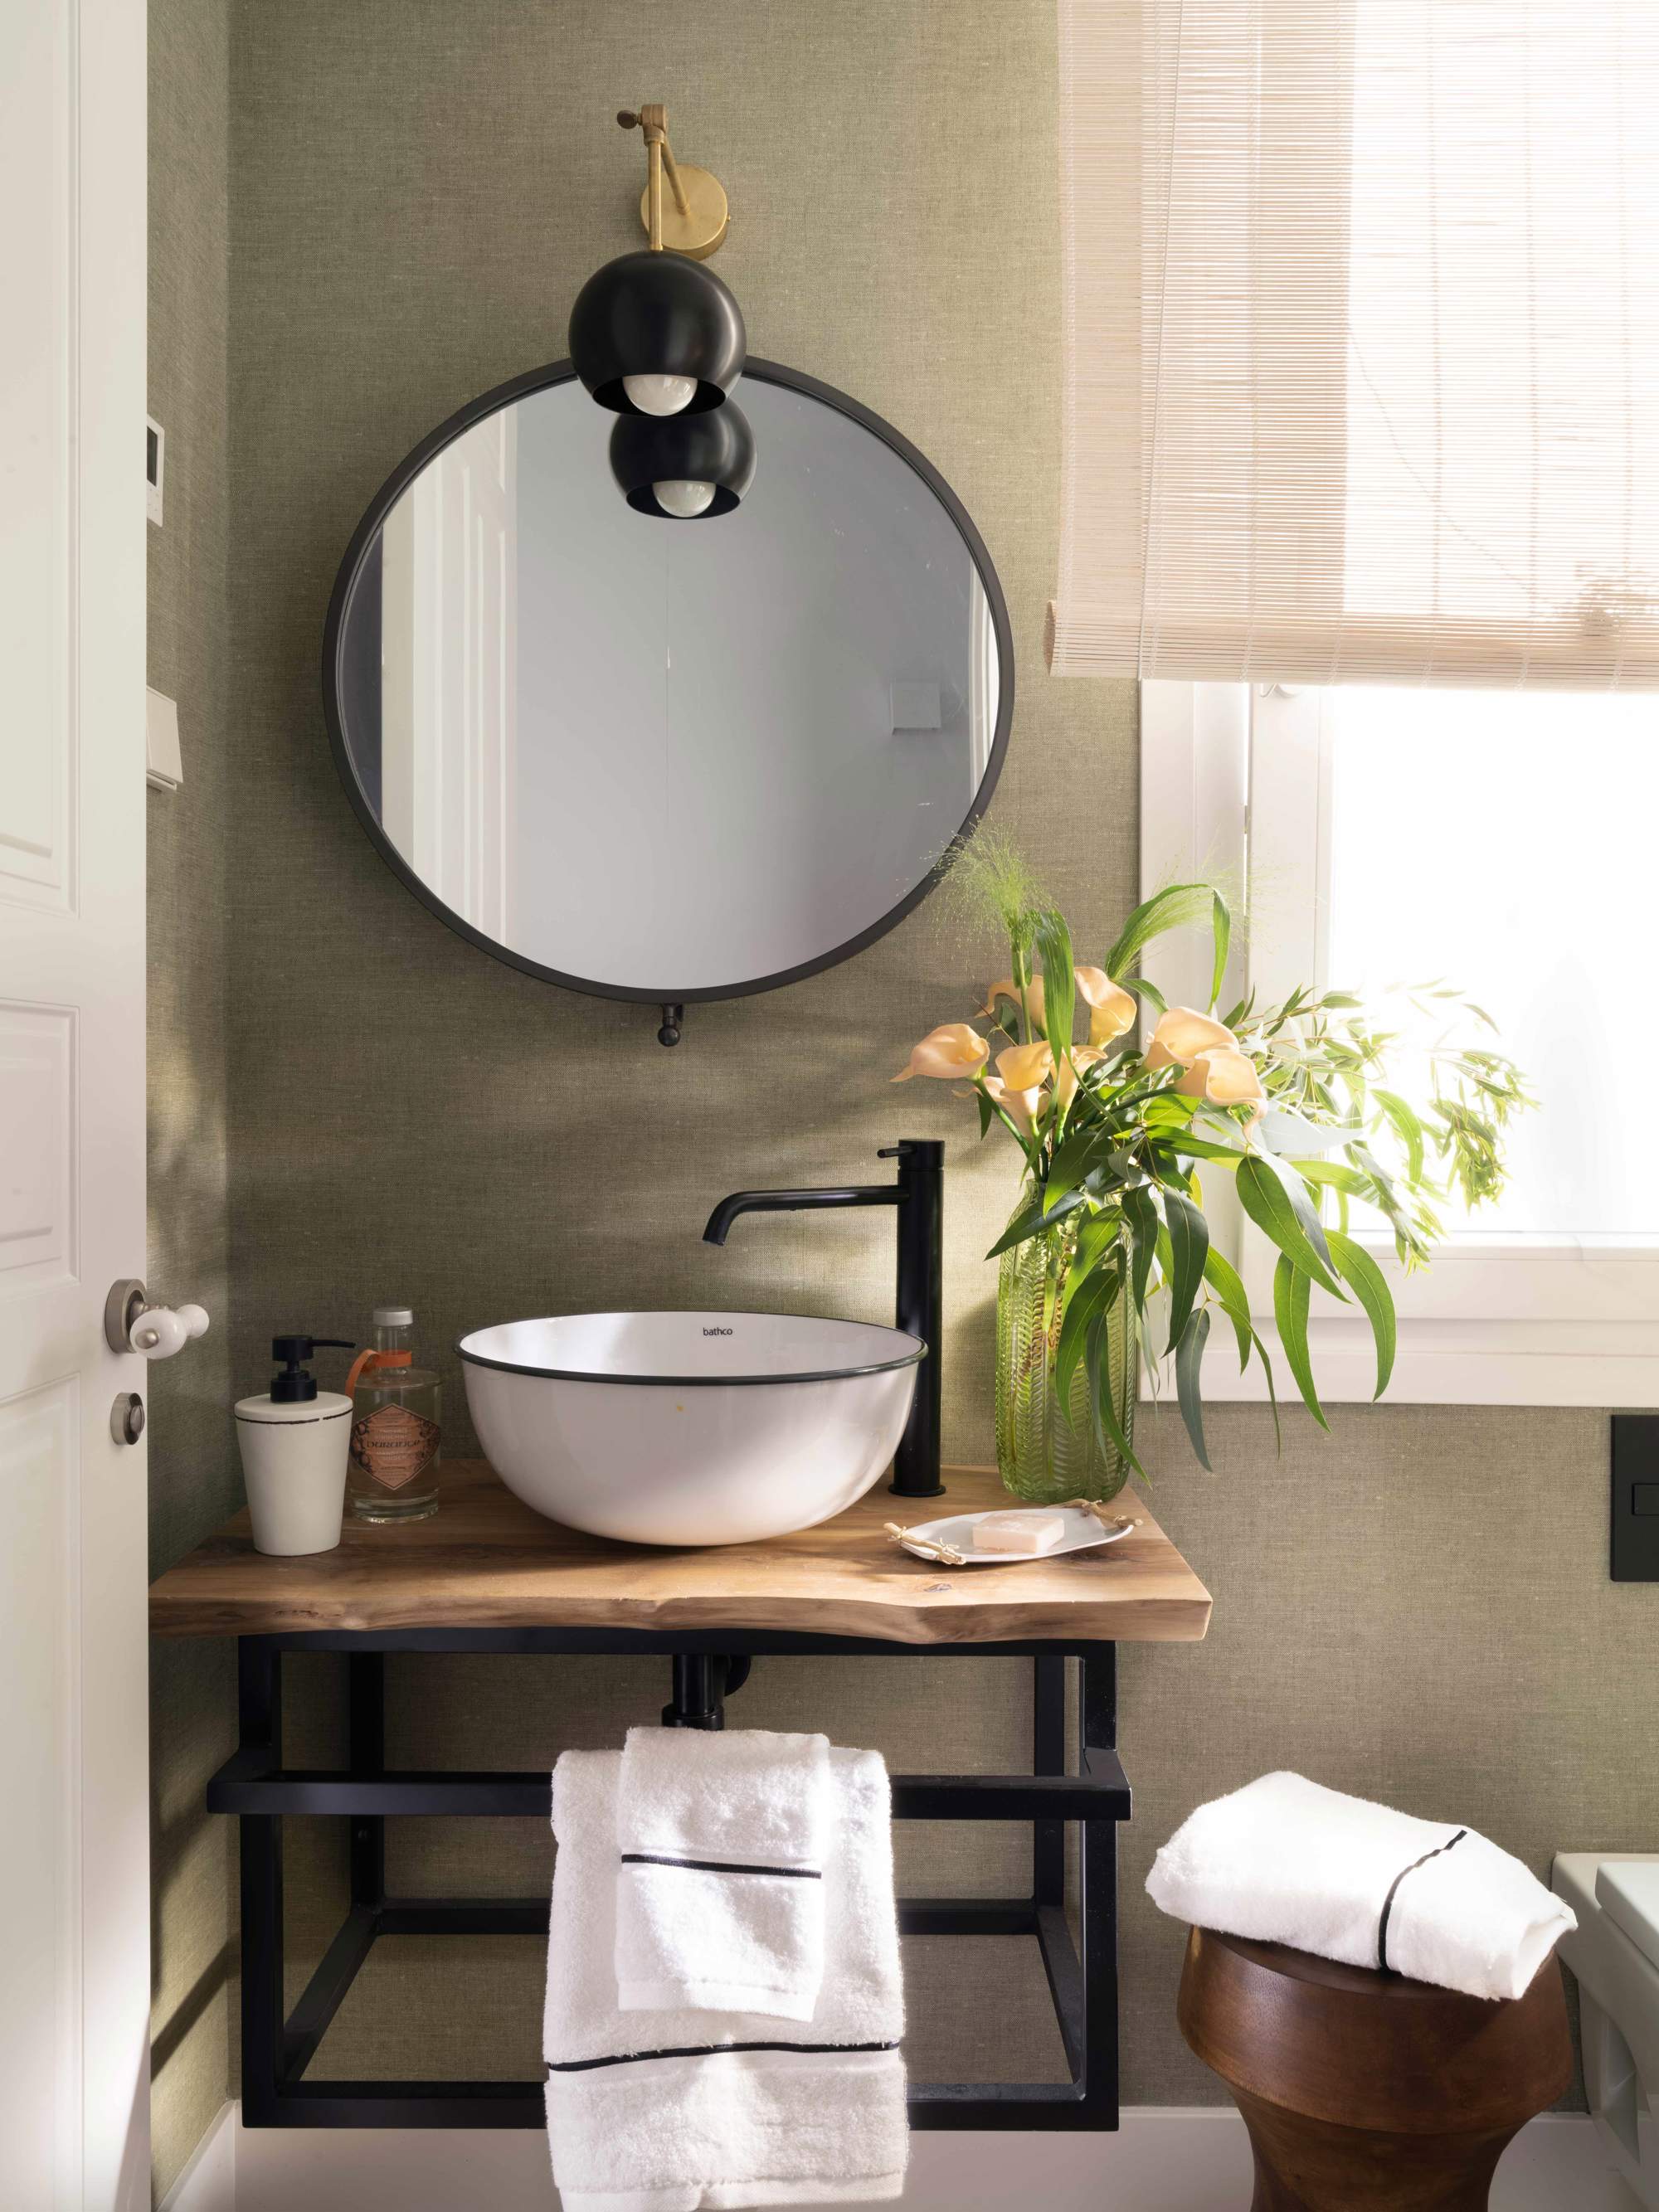 Baño con mueble de lavabo volado en madera y metal, espejo, aplique, lavamanos exento, grifería negra y flores